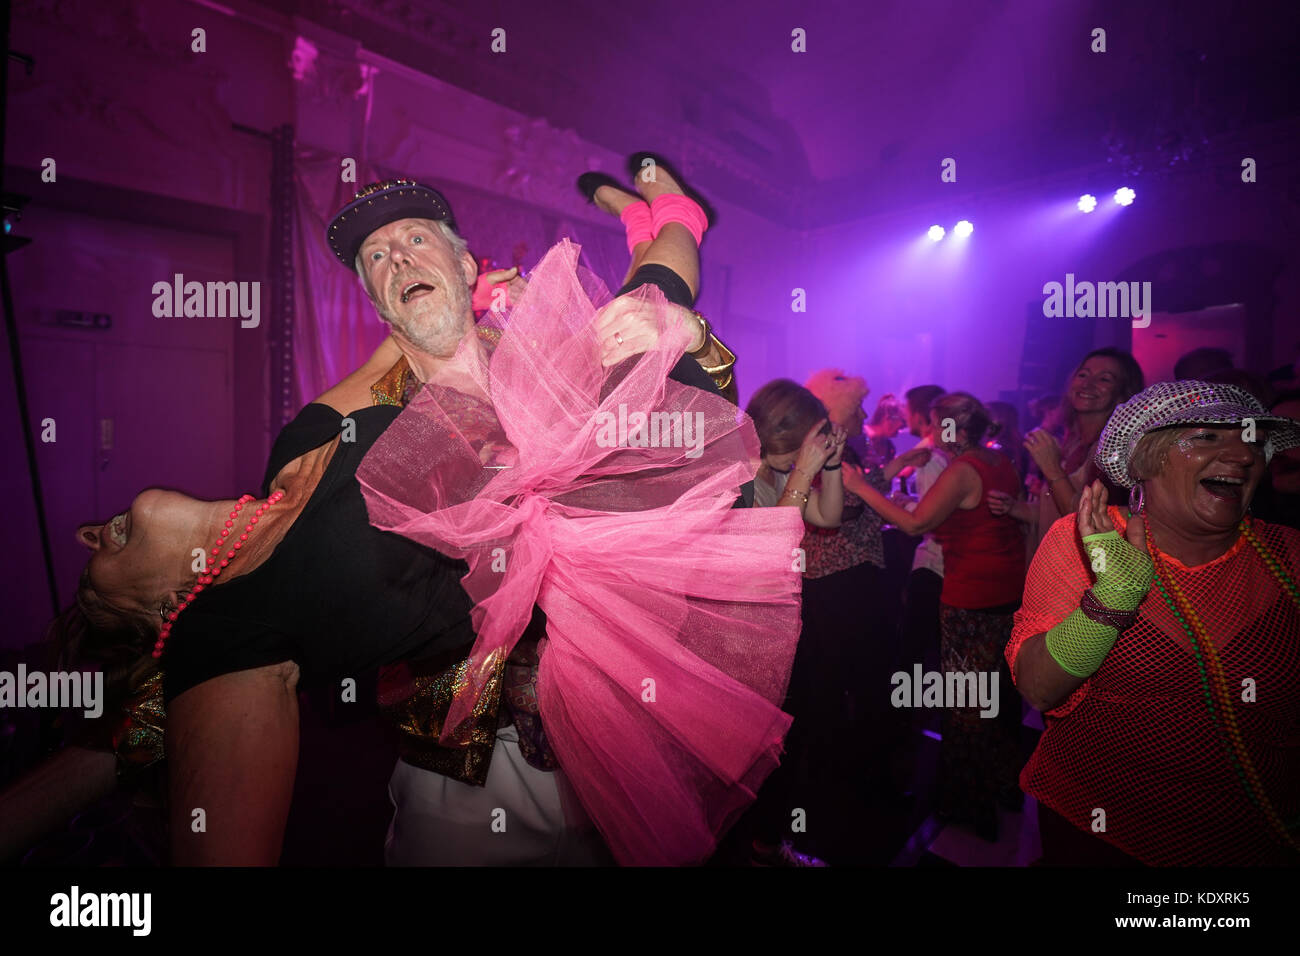 Partygänger im Glanz der Widerstand ist in der disco club Nacht verlor mit dem Haus Eden Burlesque Tänzerinnen im Bush Hall in London. foto Datum: saturd Stockfoto